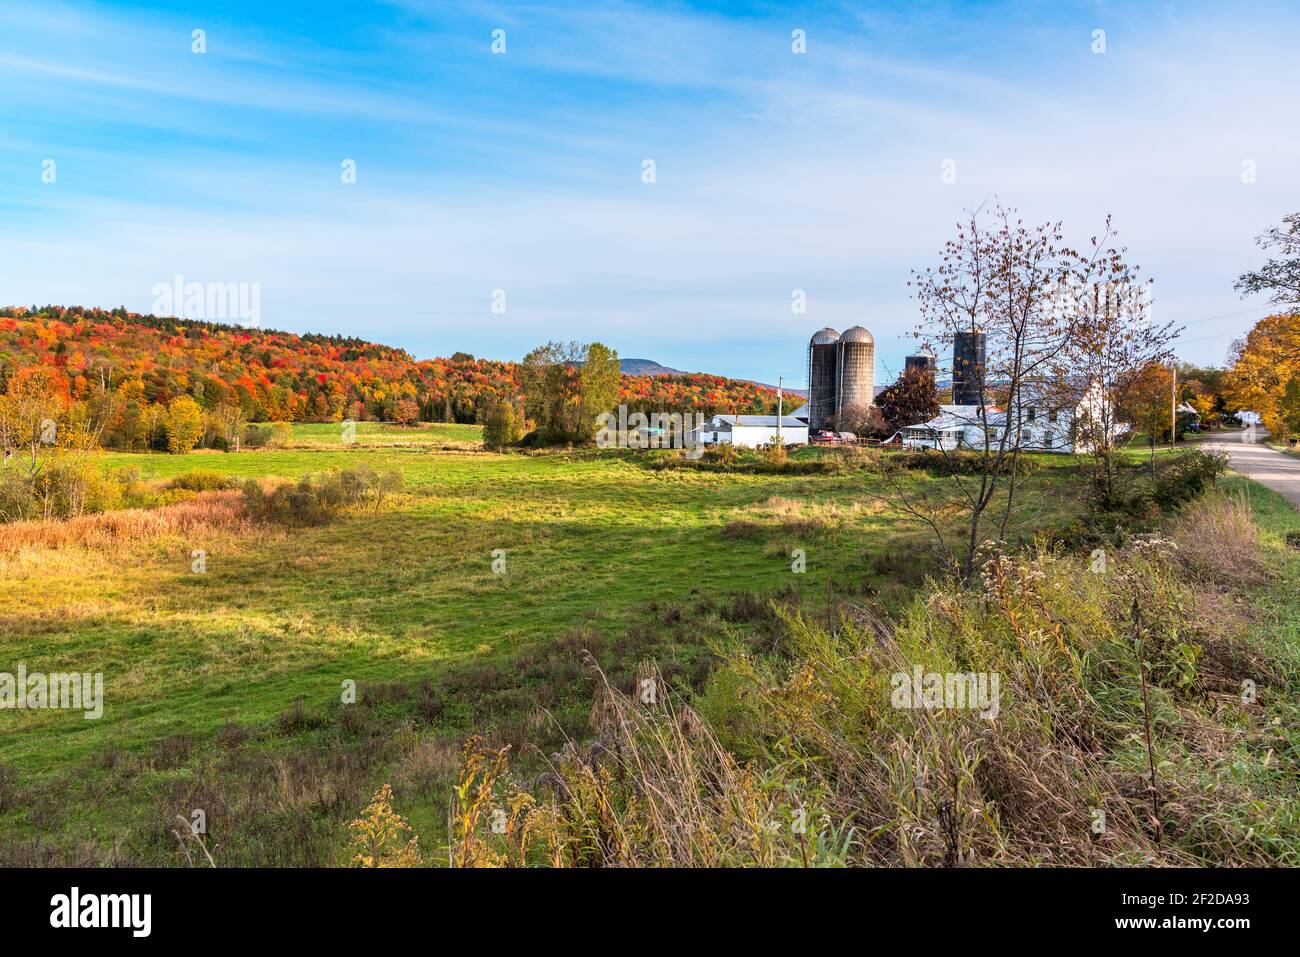 Ländliche Landschaft in Vermont mit landwirtschaftlichen Gebäuden entlang einer unbefestigten Straße an einem sonnigen Herbsttag. Atemberaubende Herbstfarben im Hintergrund. Stockfoto